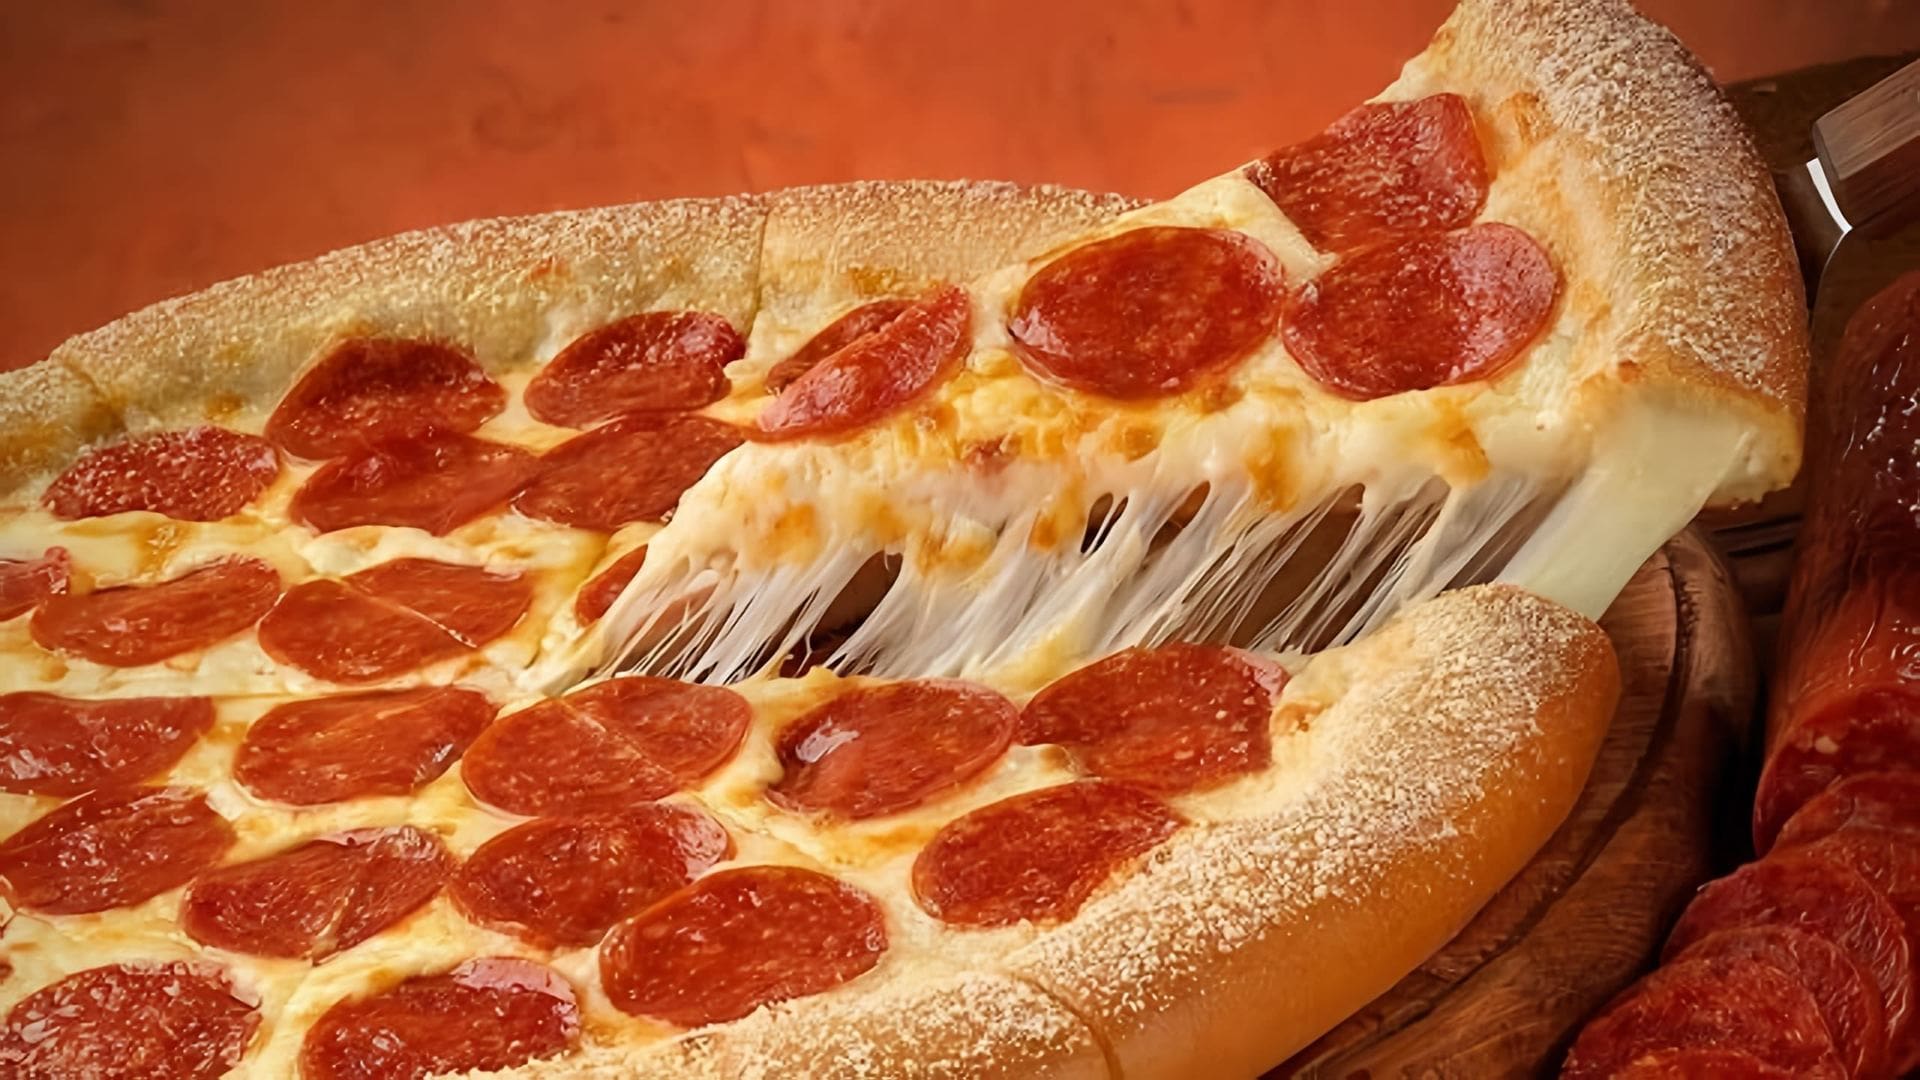 "Приготовление пиццы Пепперони дома" - это видео-ролик, который показывает, как приготовить вкусную пиццу Пепперони в домашних условиях